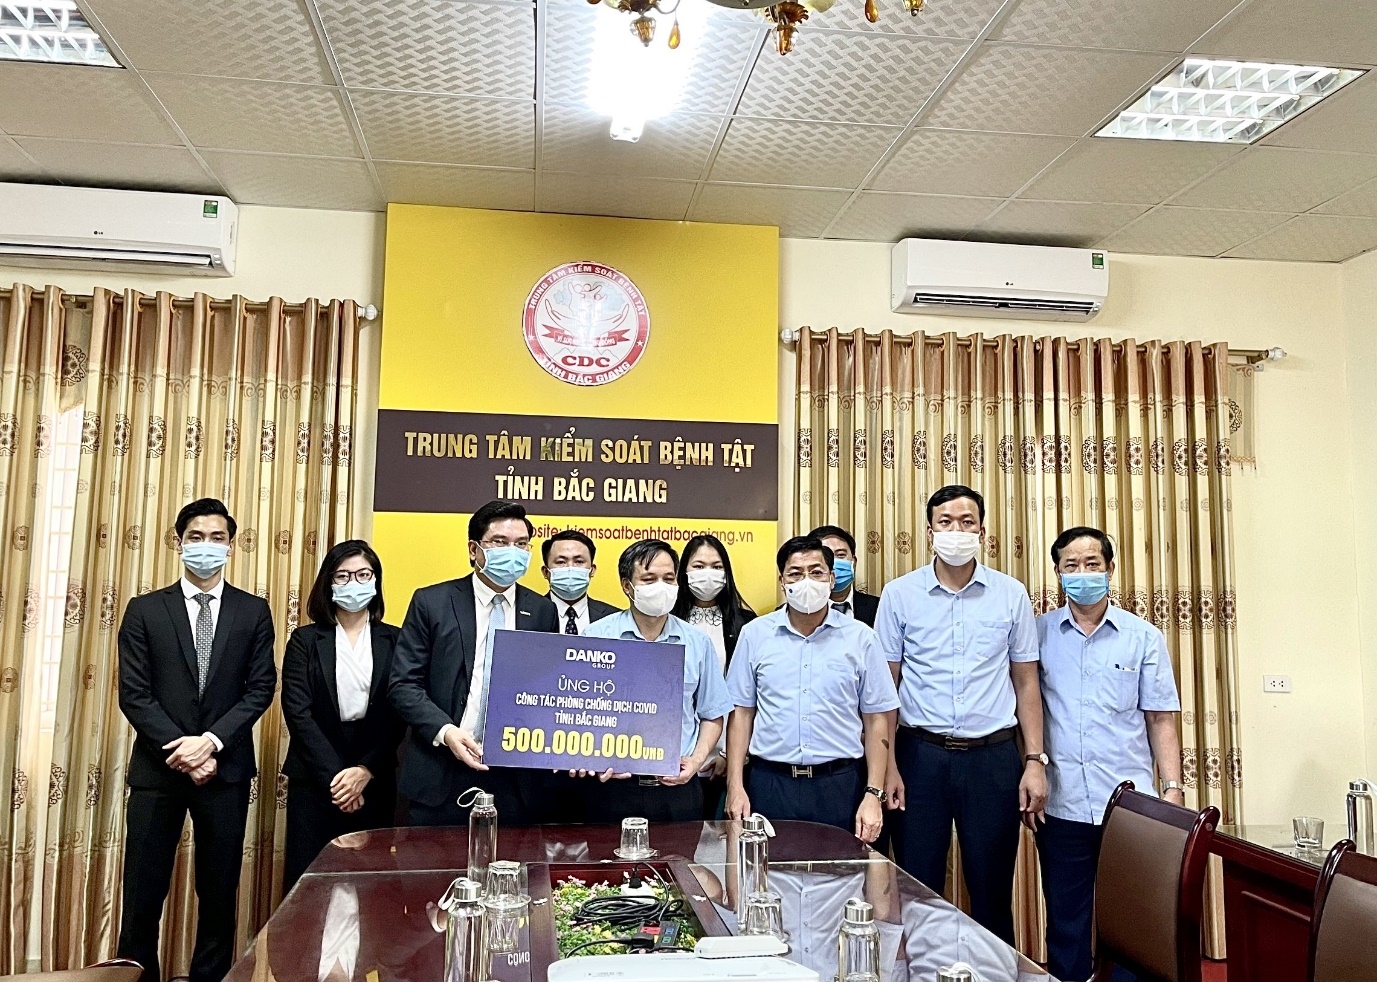 Danko Group ủng hộ 500 triệu đồng chung tay cùng Bắc Giang chống dịch Covid-19